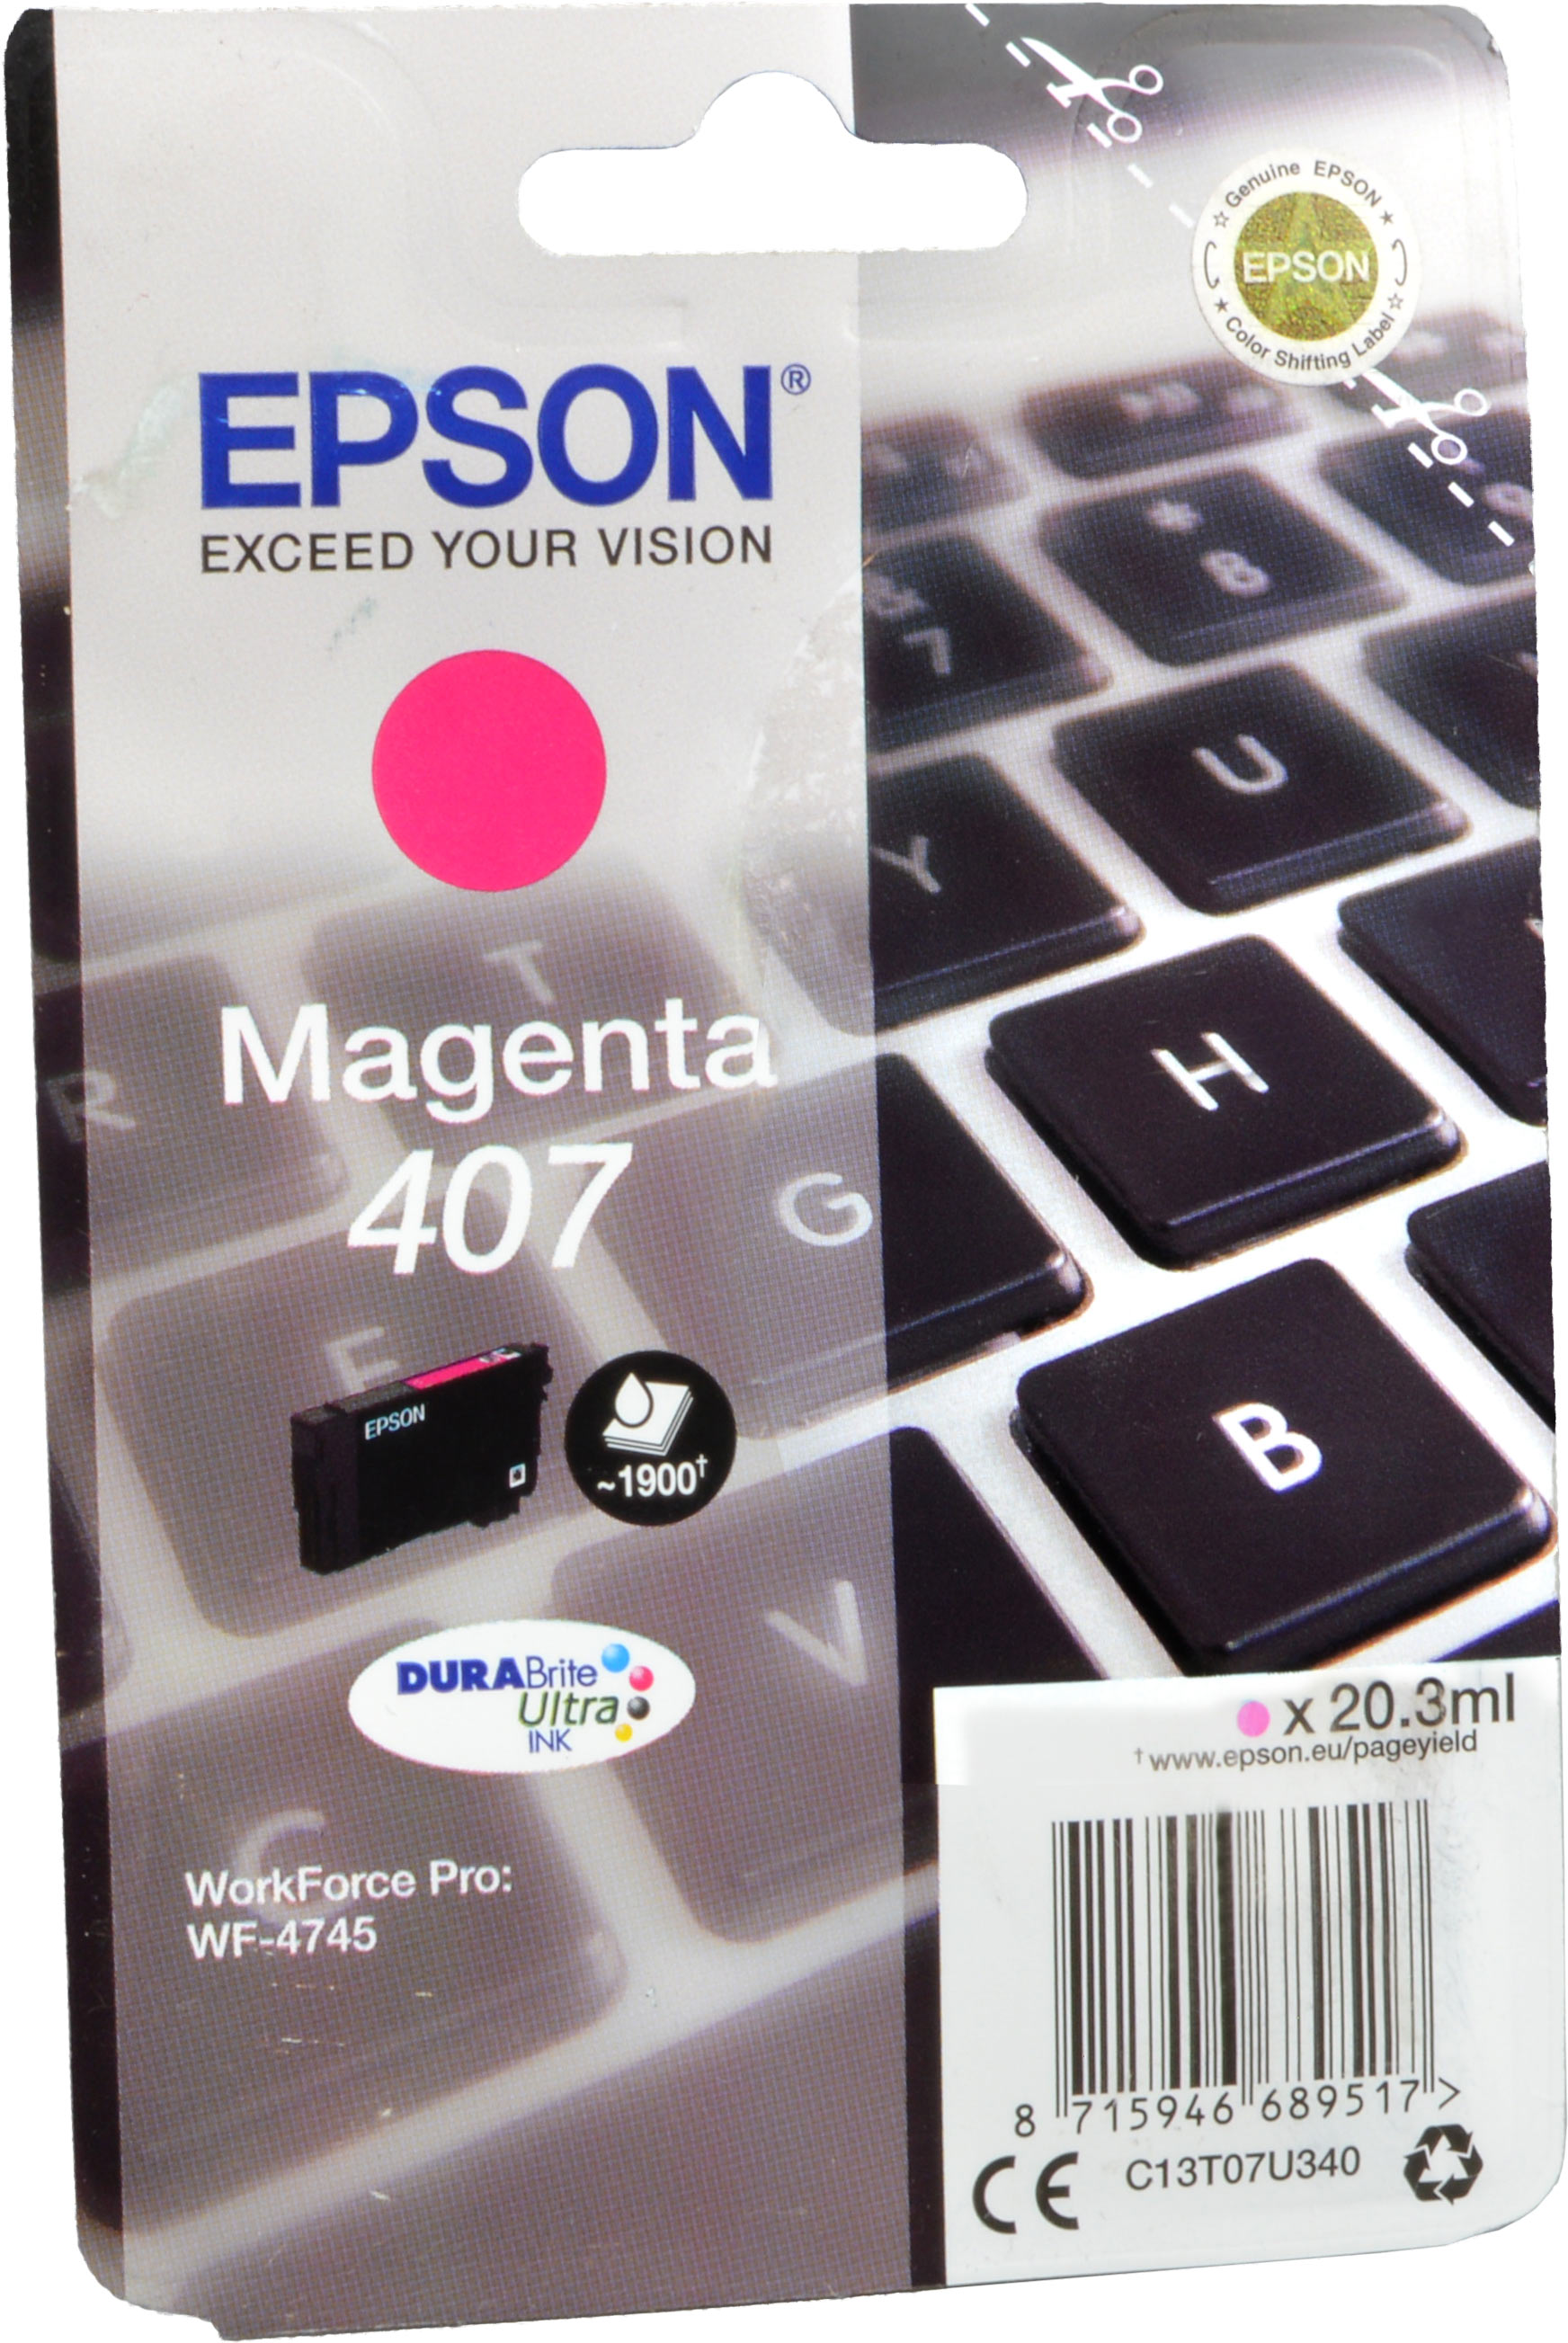 Epson Tinte C13T07U340  407  magenta